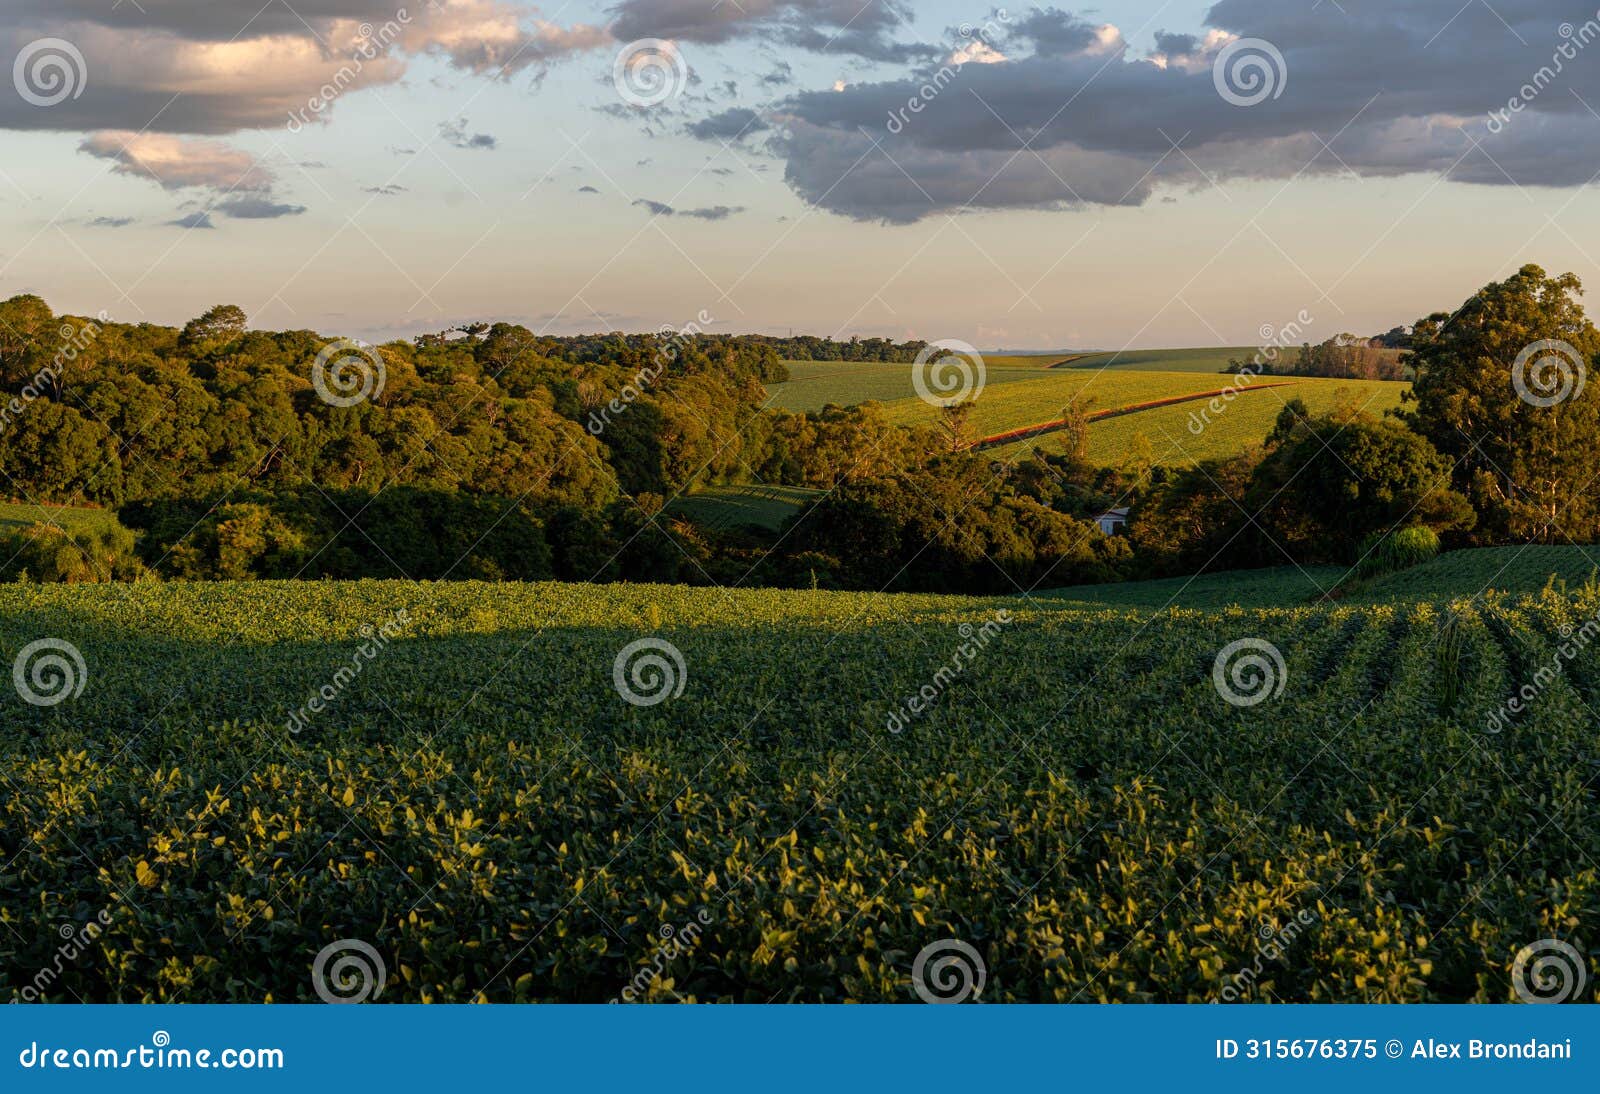 landscape of soybean fields in rio grande do sul, brazil